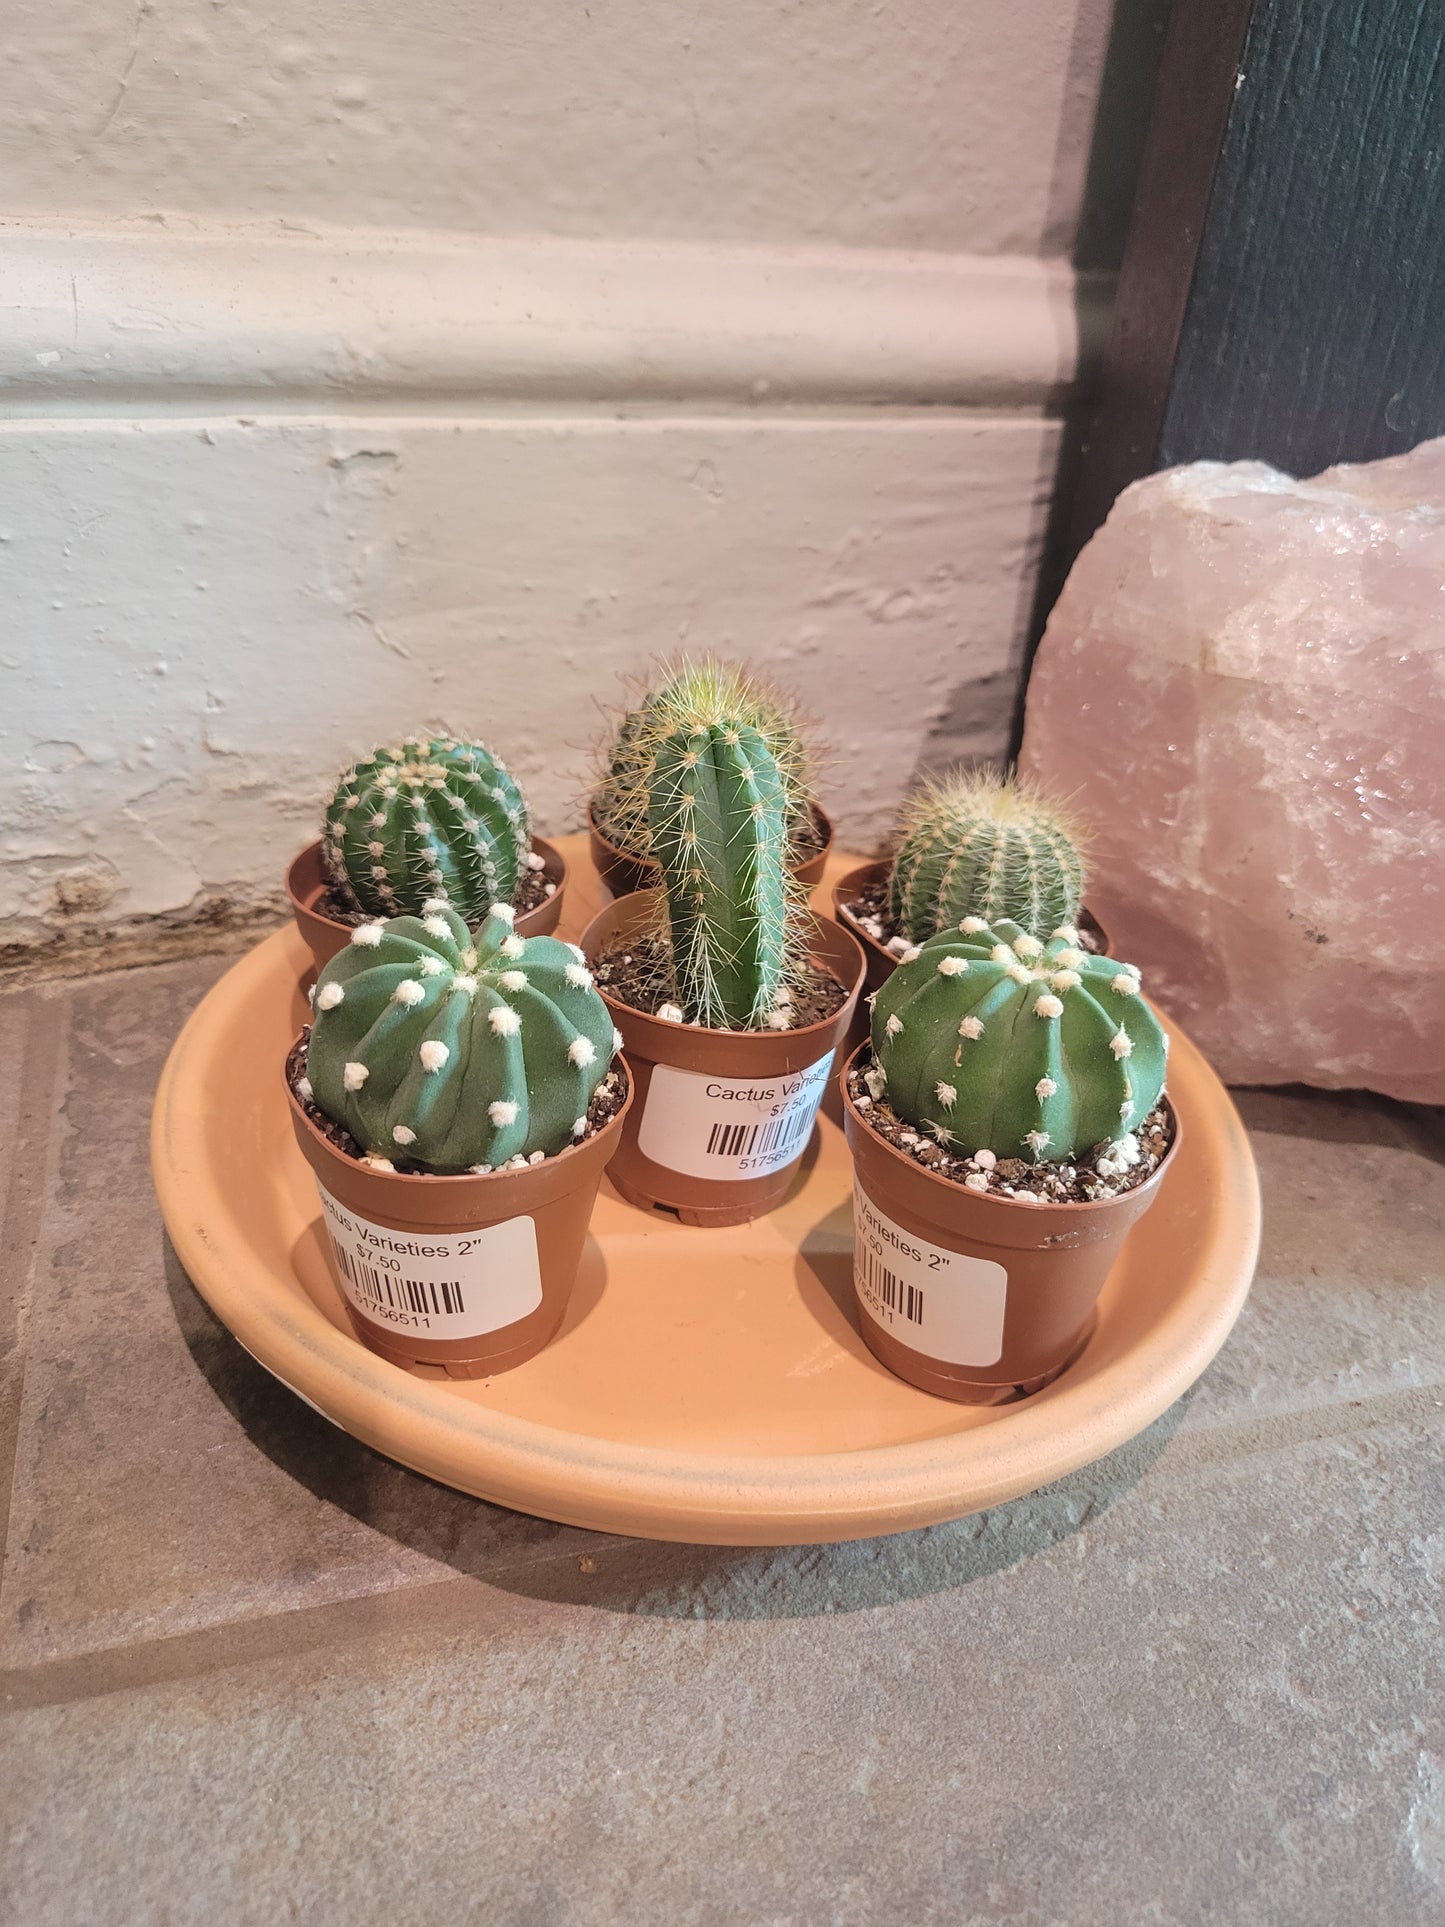 Cactus Varieties 2"